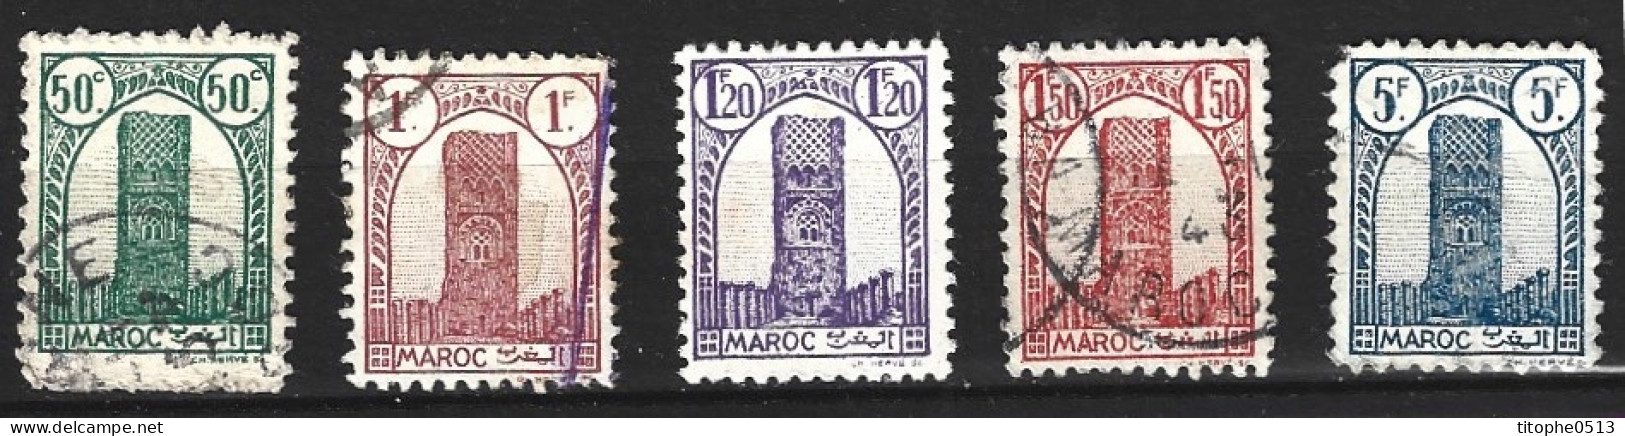 MAROC. Timbres Oblitérés De 1943-4. Tour Hassan. - Used Stamps